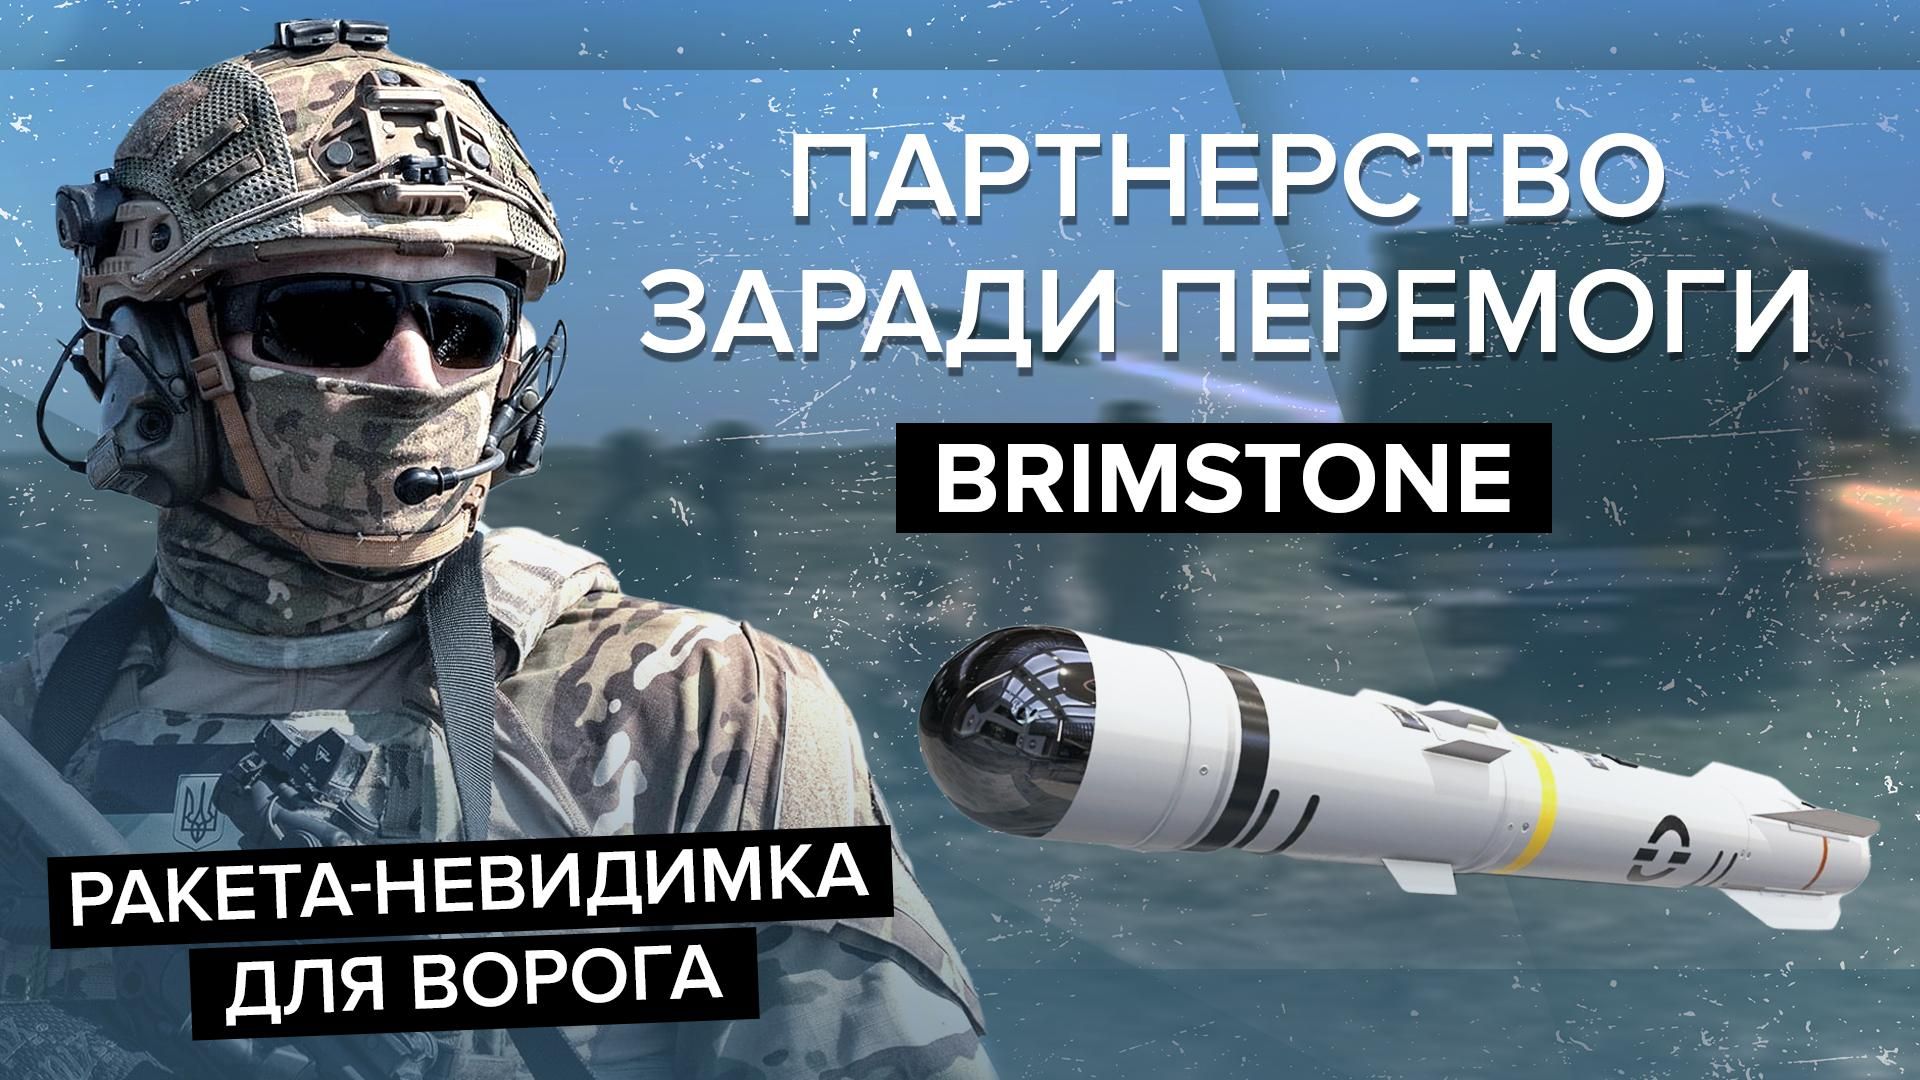 Brimstone - на що здатні надпотужні ракети - характеристика - 24 Канал